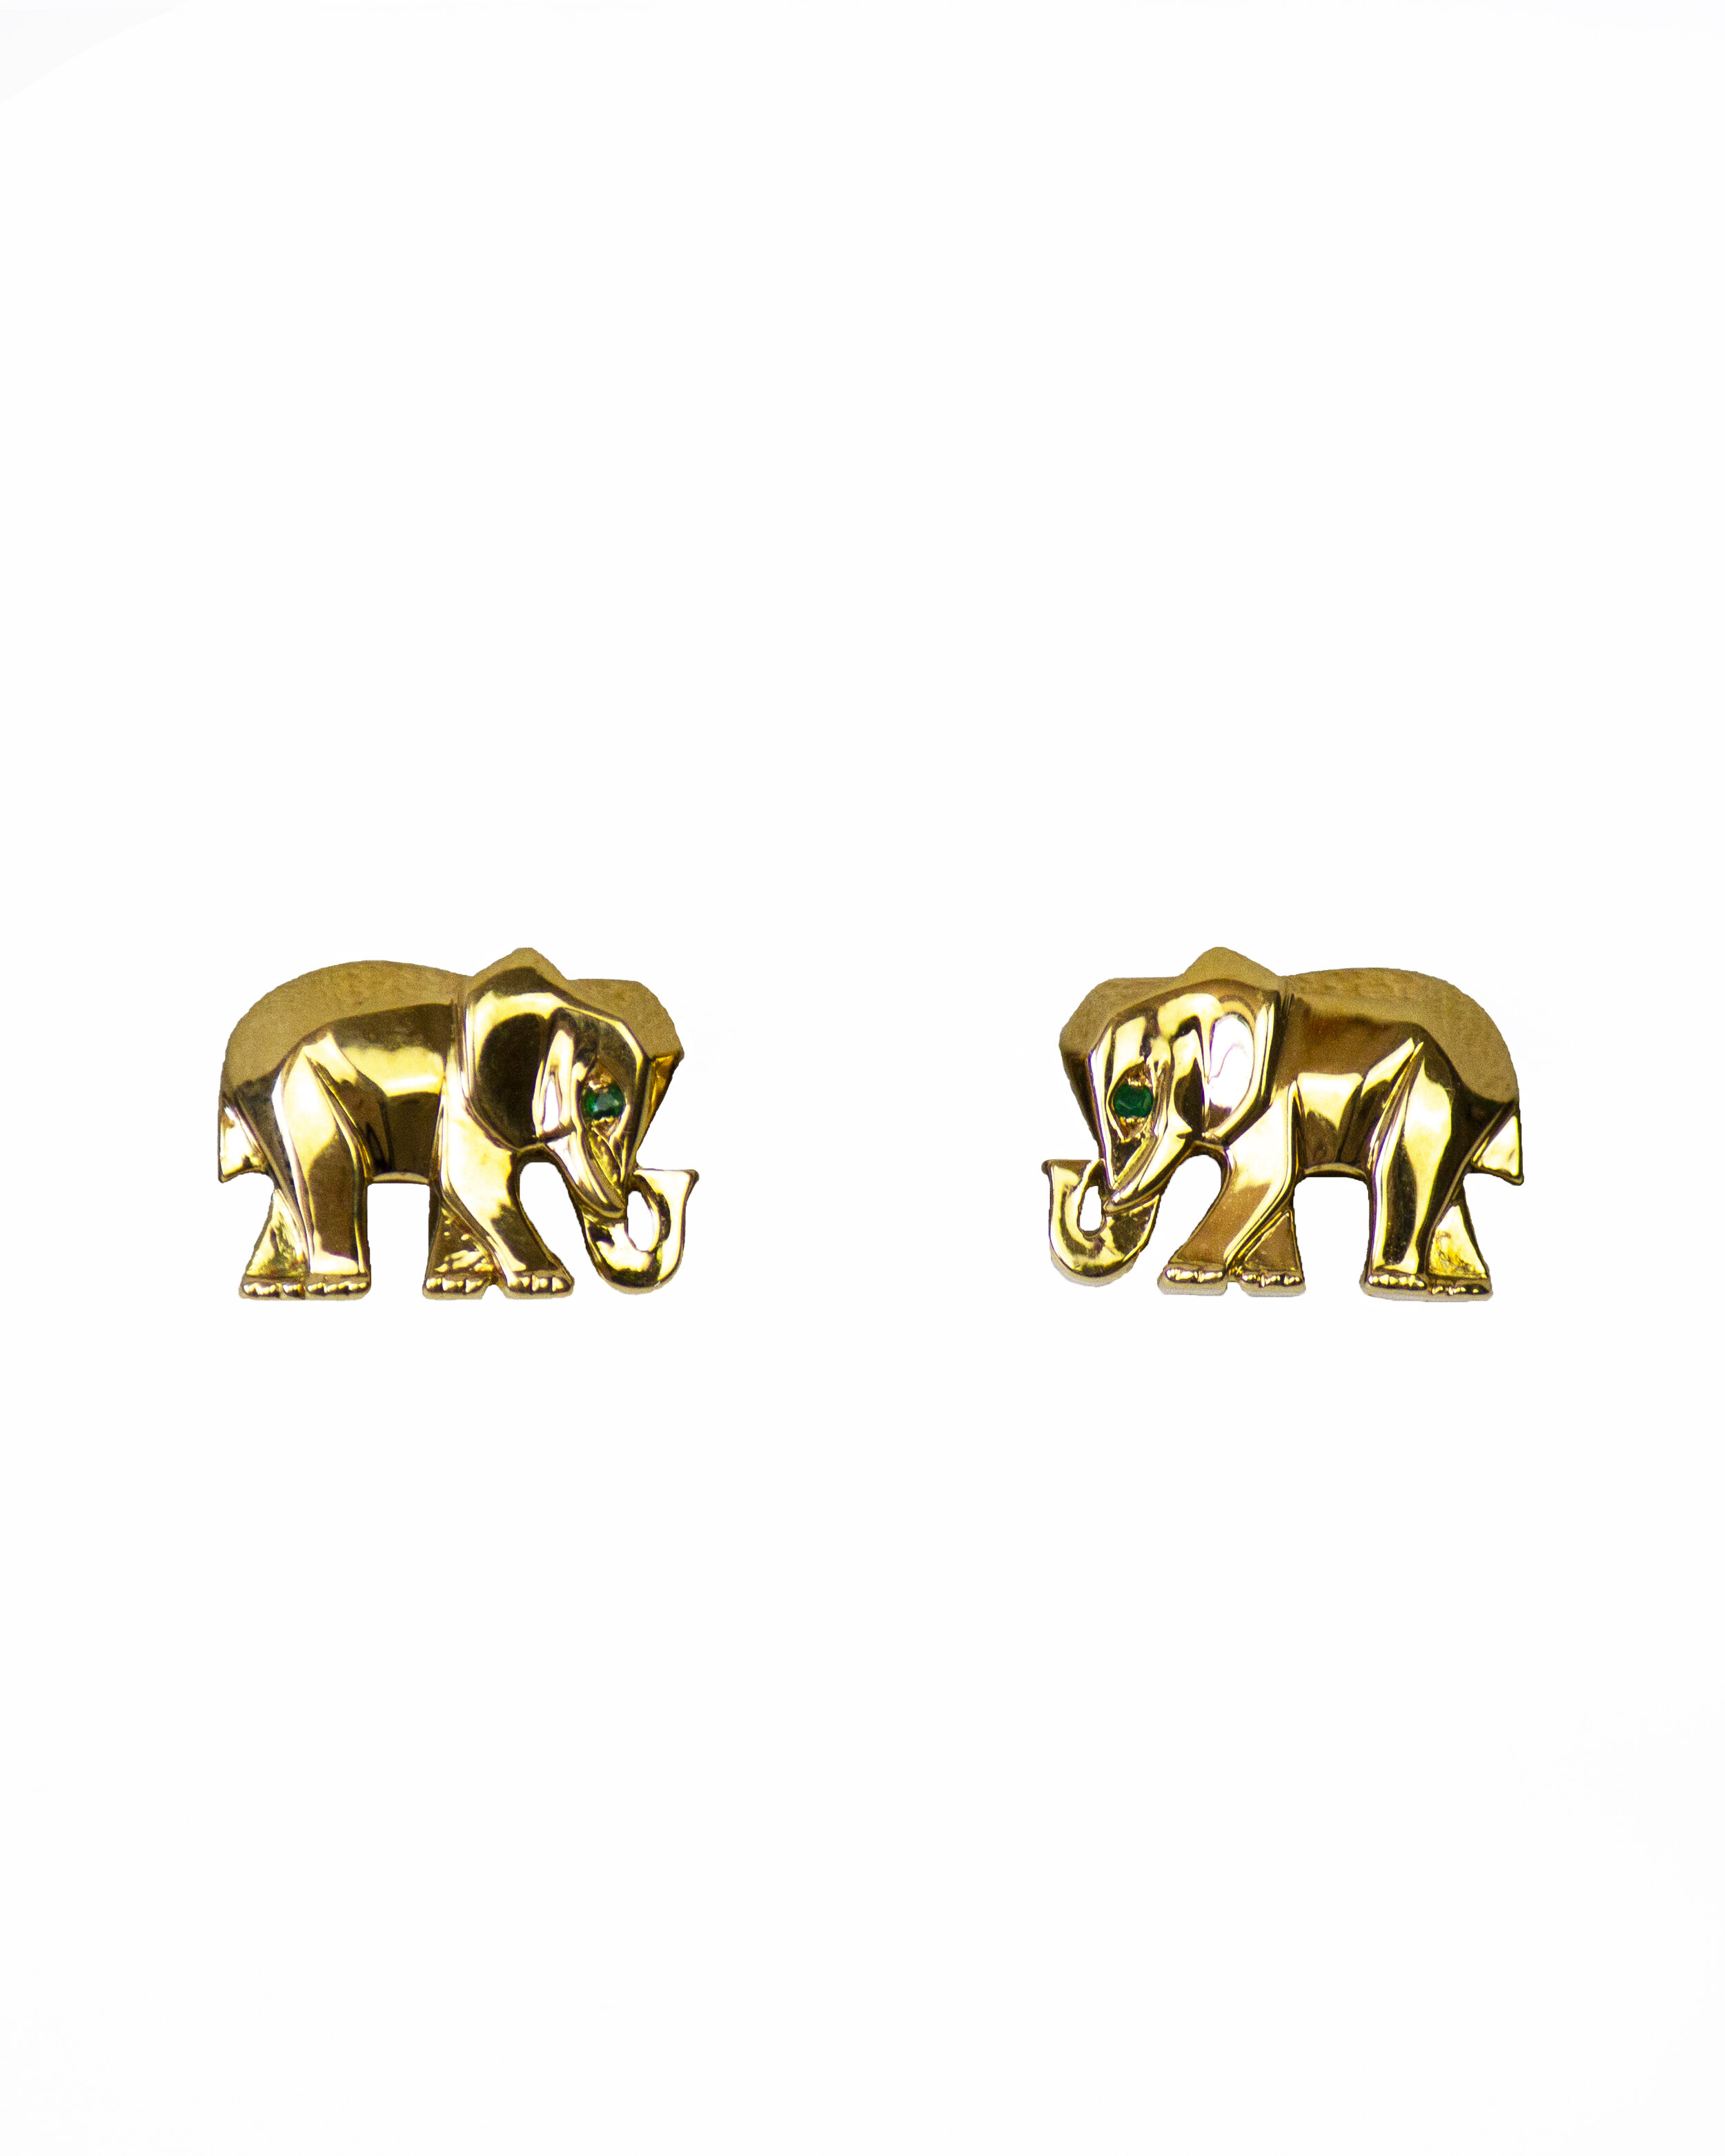 Cartier Cufflinks, Elephants, 18kt gold 